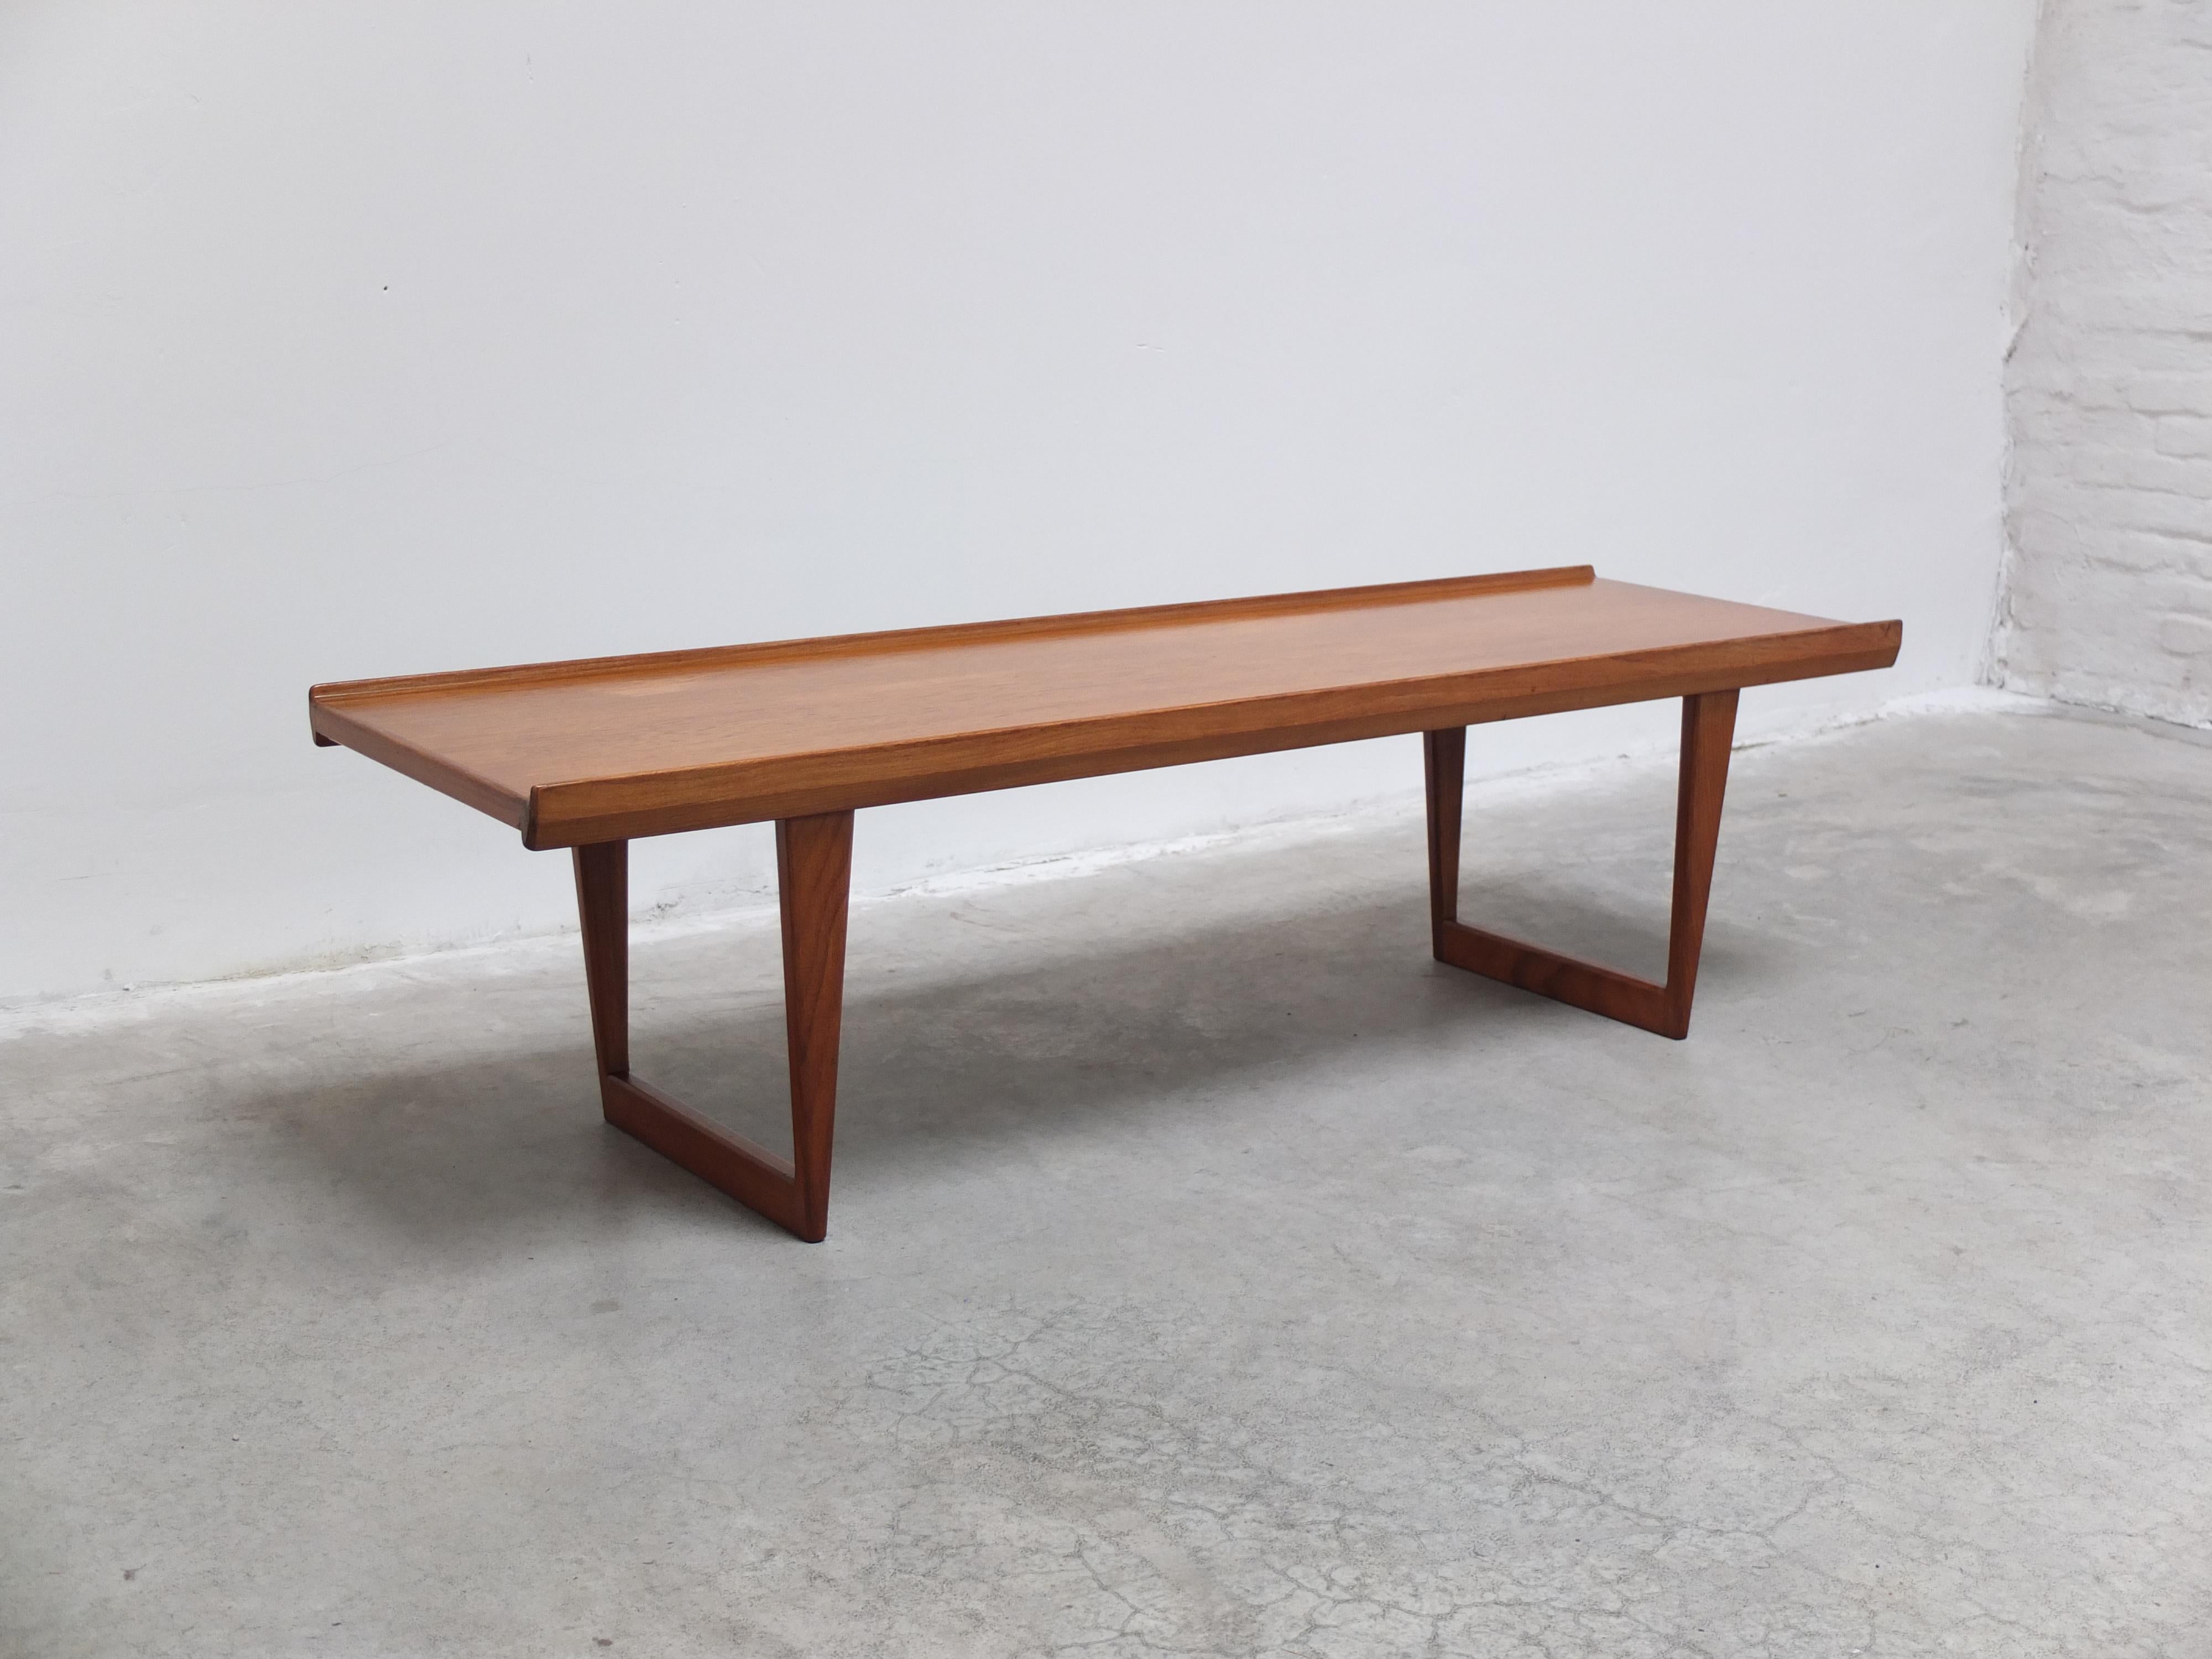 Magnifique table basse conçue par Peter Løvig Nielsen dans les années 1960. Un très beau design raffiné avec de superbes détails tels que le bord en relief et les pieds en luge. En très bon état avec une légère décoloration comme on peut le voir sur